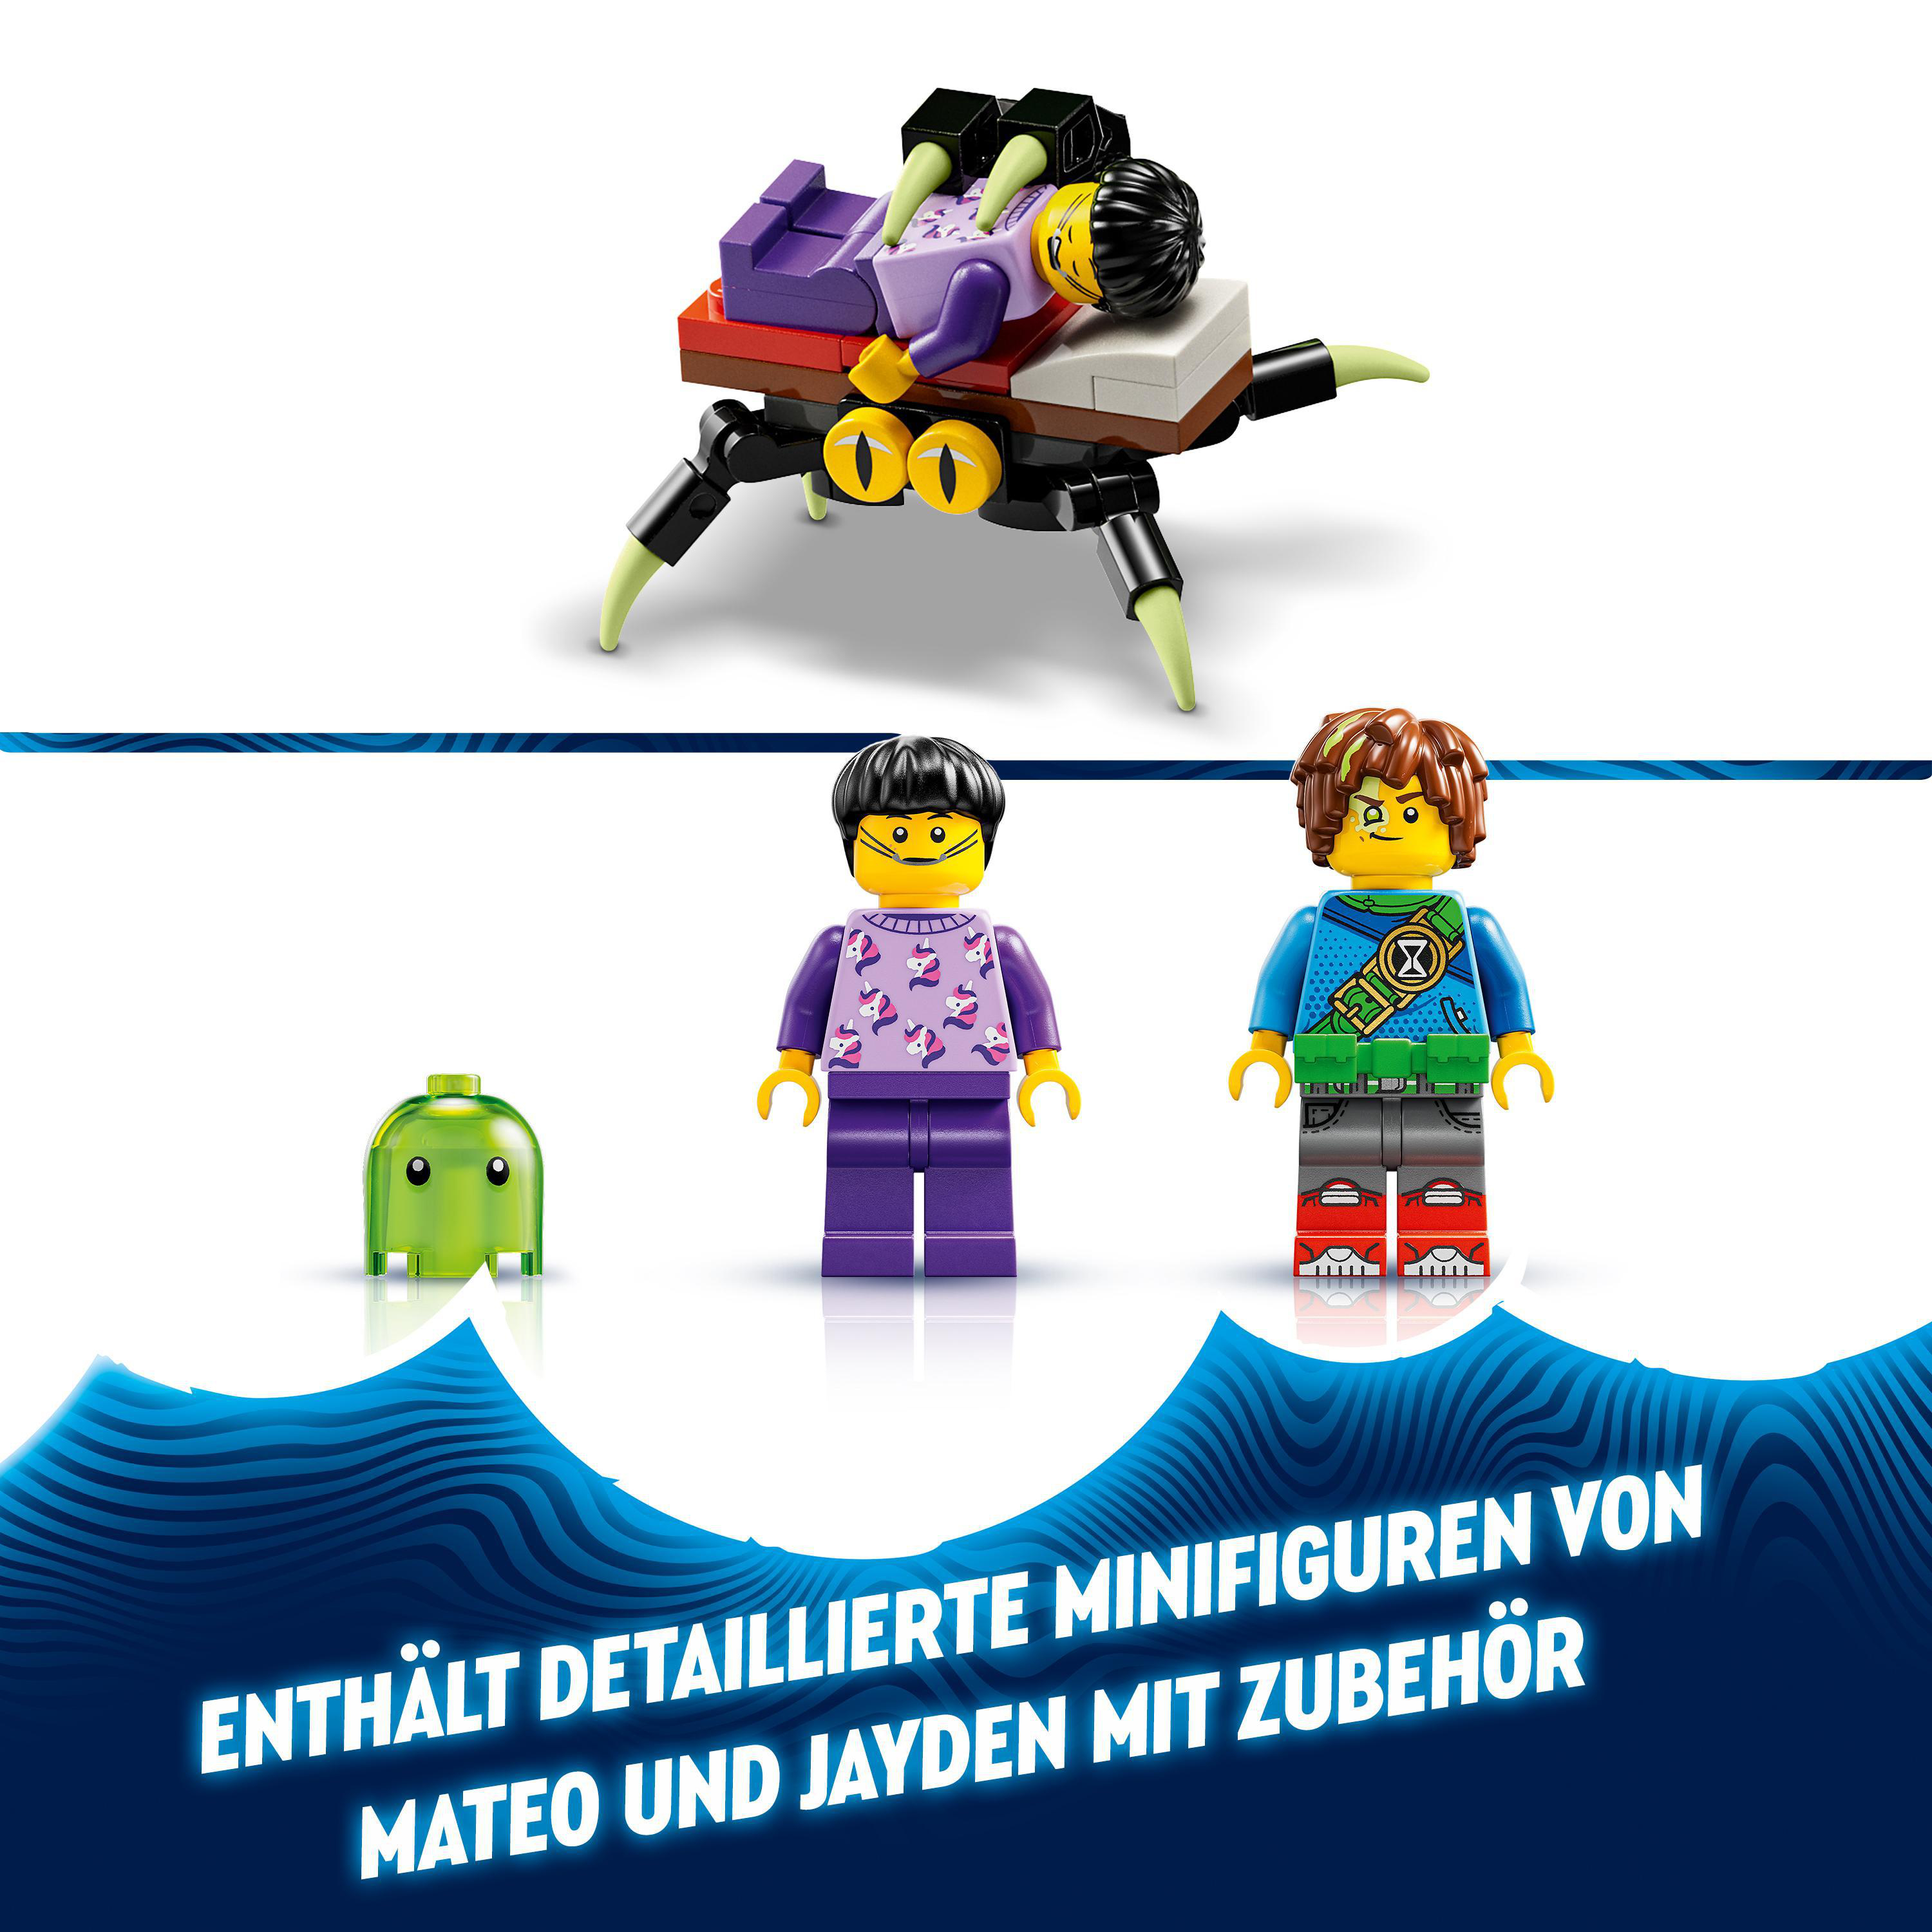 LEGO DREAMZzz und Bausatz, Z-Blob Mehrfarbig Roboter Mateo 71454